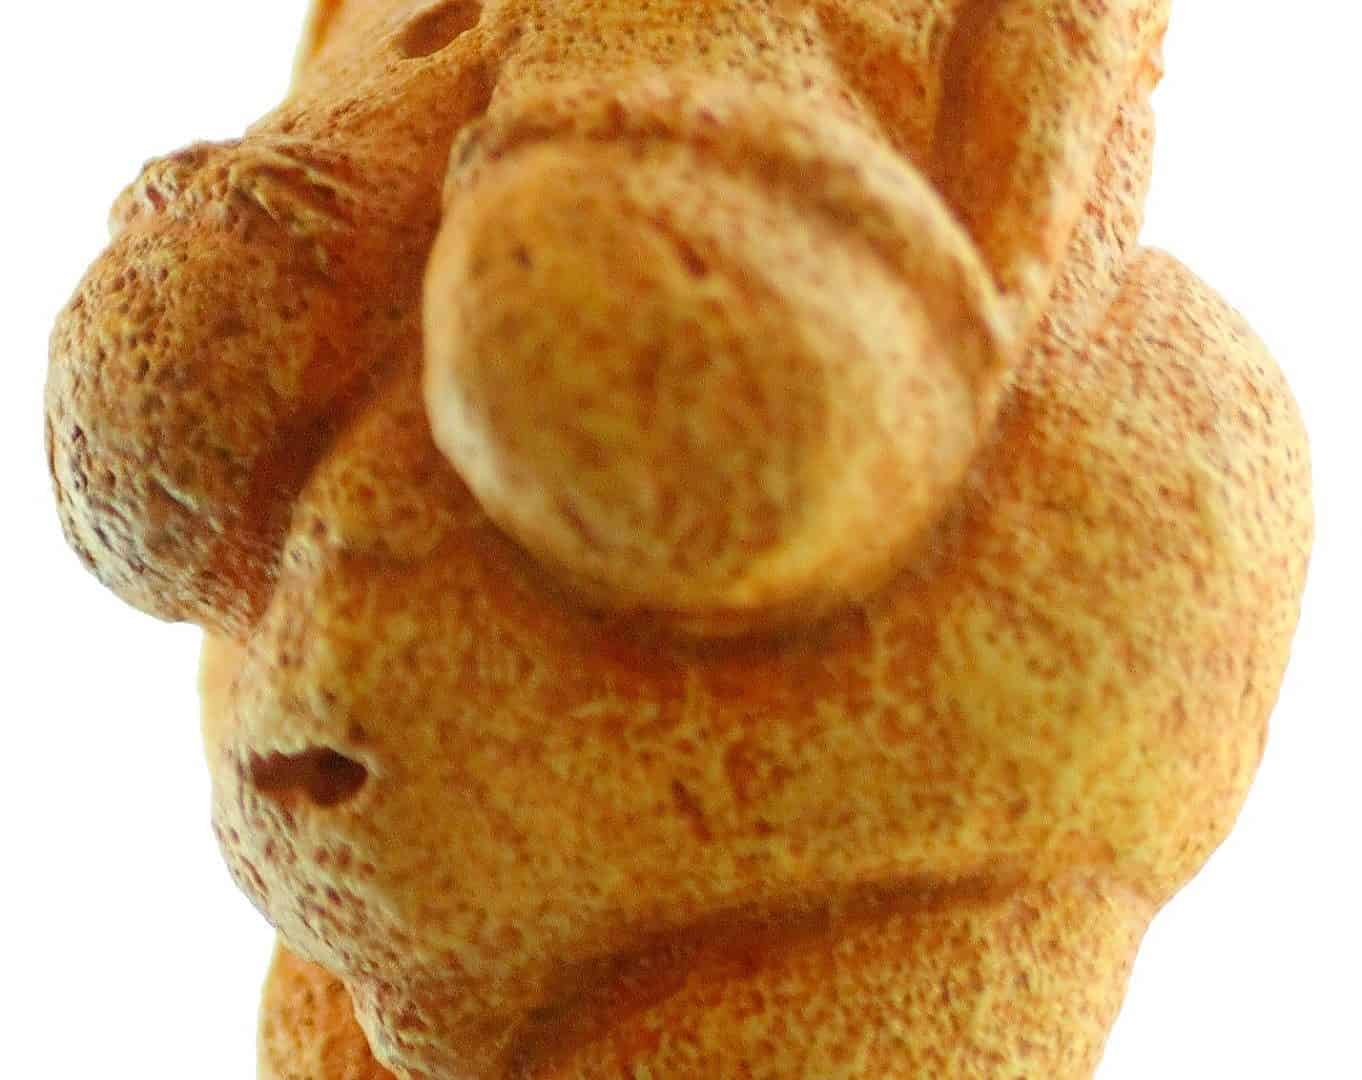 https://commons.wikimedia.org/wiki/File:Venus_von_Willendorf_01.jpg